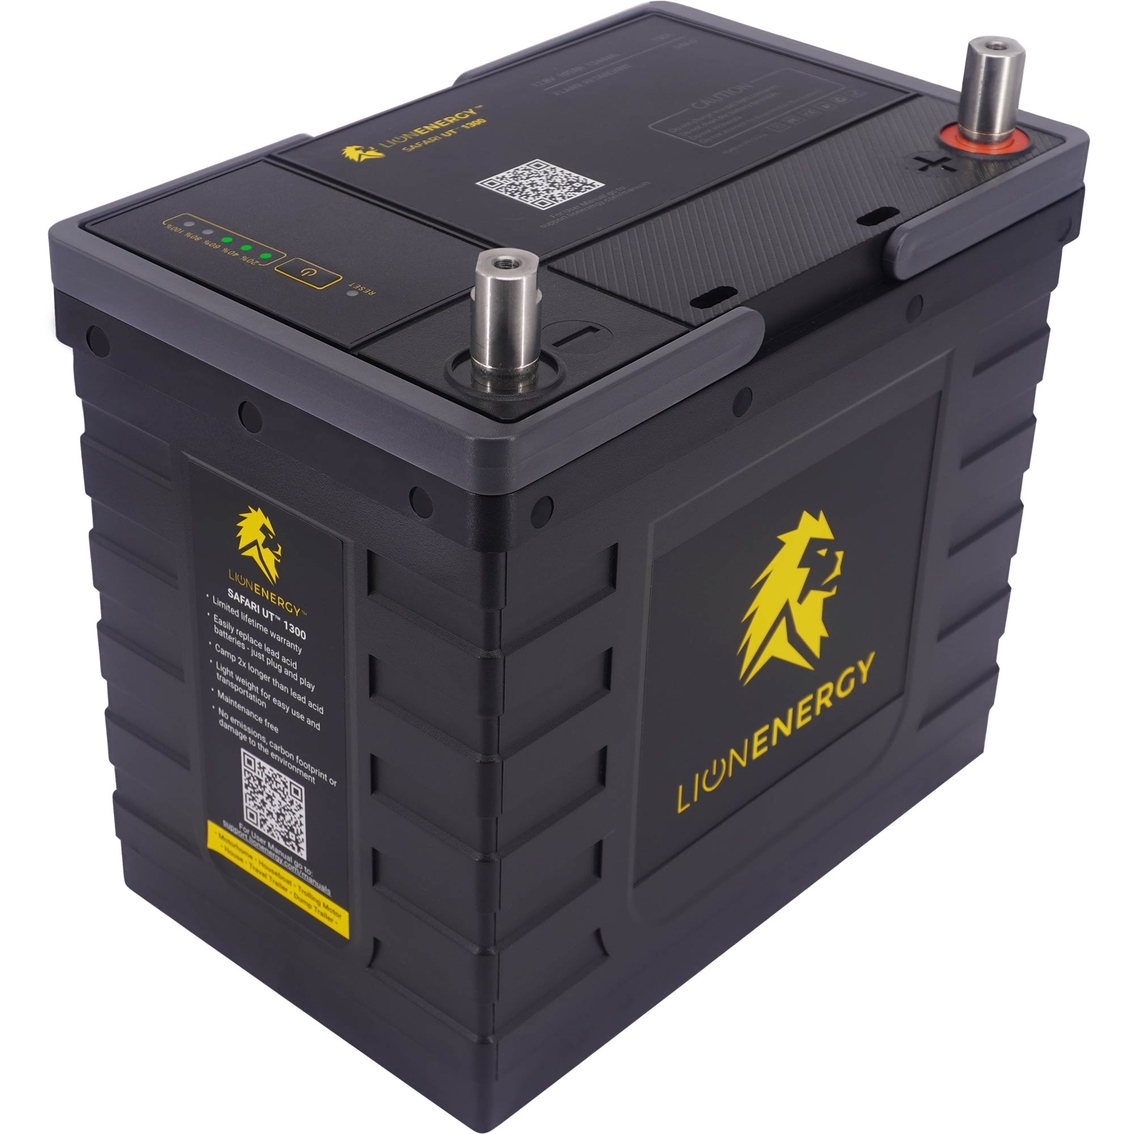 Lion Energy UT 1300 BT Battery - Image 2 of 5